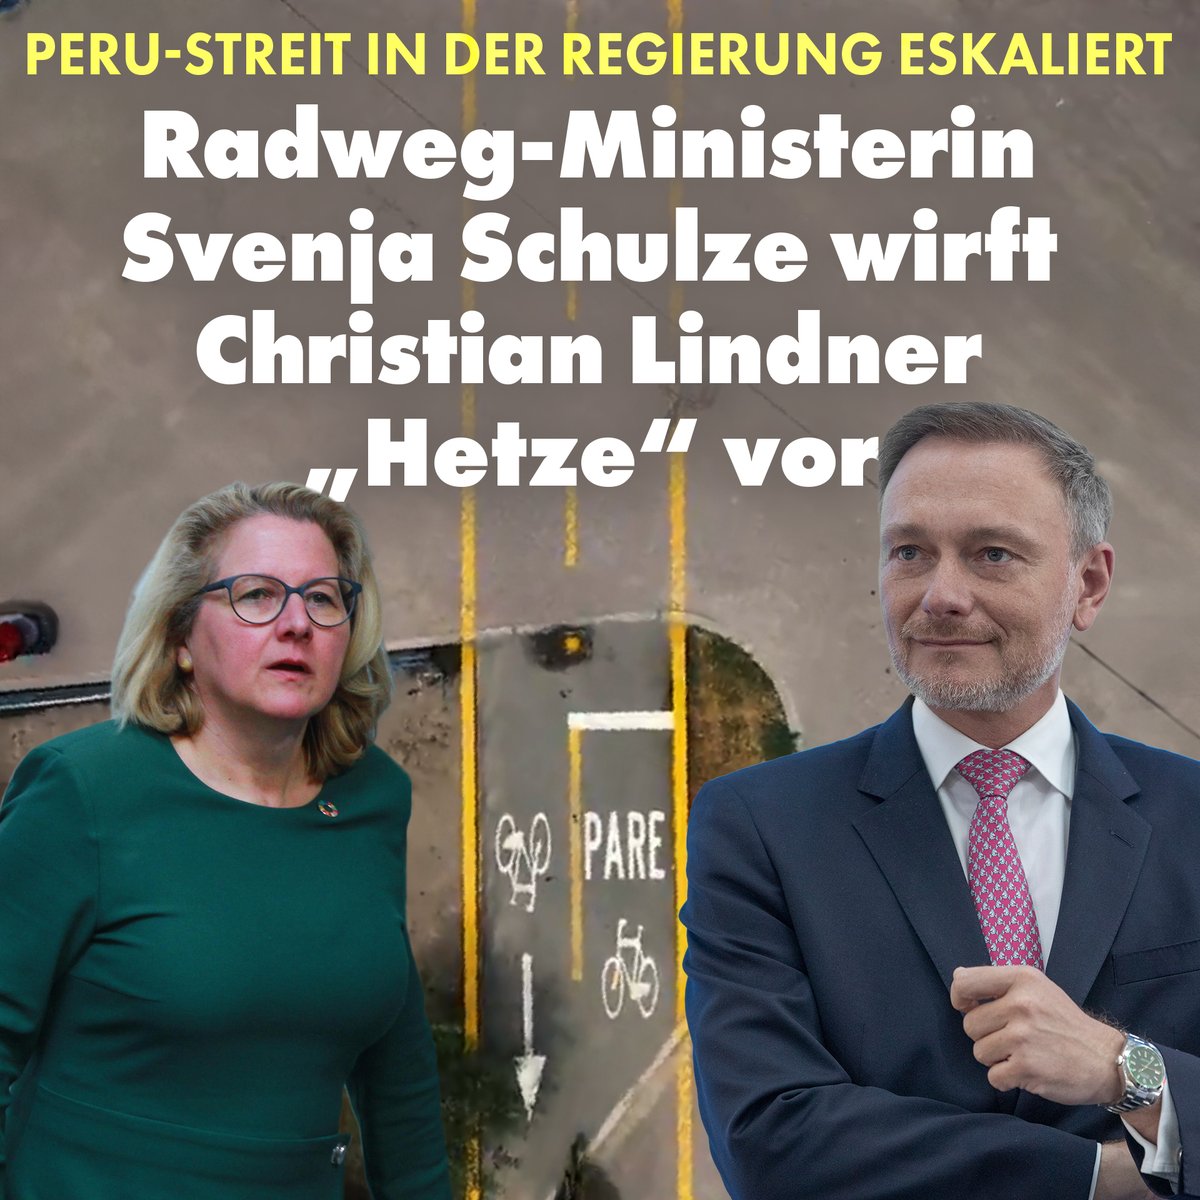 Es knirscht in der Ampel! Entwicklungshilfeministerin Schulze (SPD) wirft ihrem Kabinettskollegen Lindner (FDP) vor, „rechtsradikales“ Gedankengut zu verbreiten – weil der die Steuergeld-Radwege in Peru kritisiert …
nius.de/politik/peru-s…